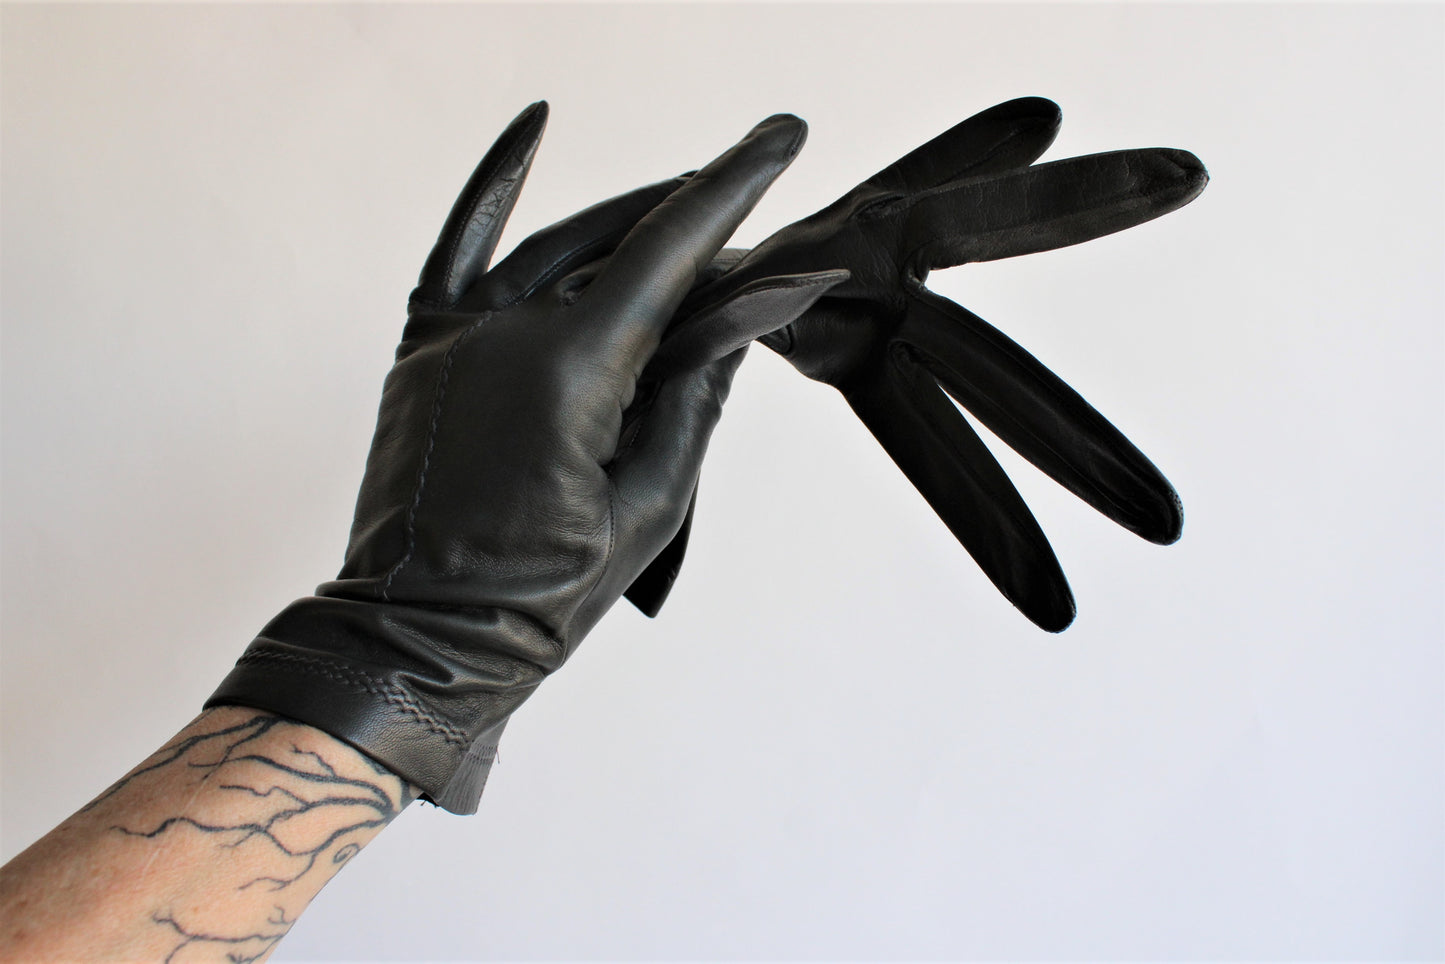 Vintage Black Leather Gloves